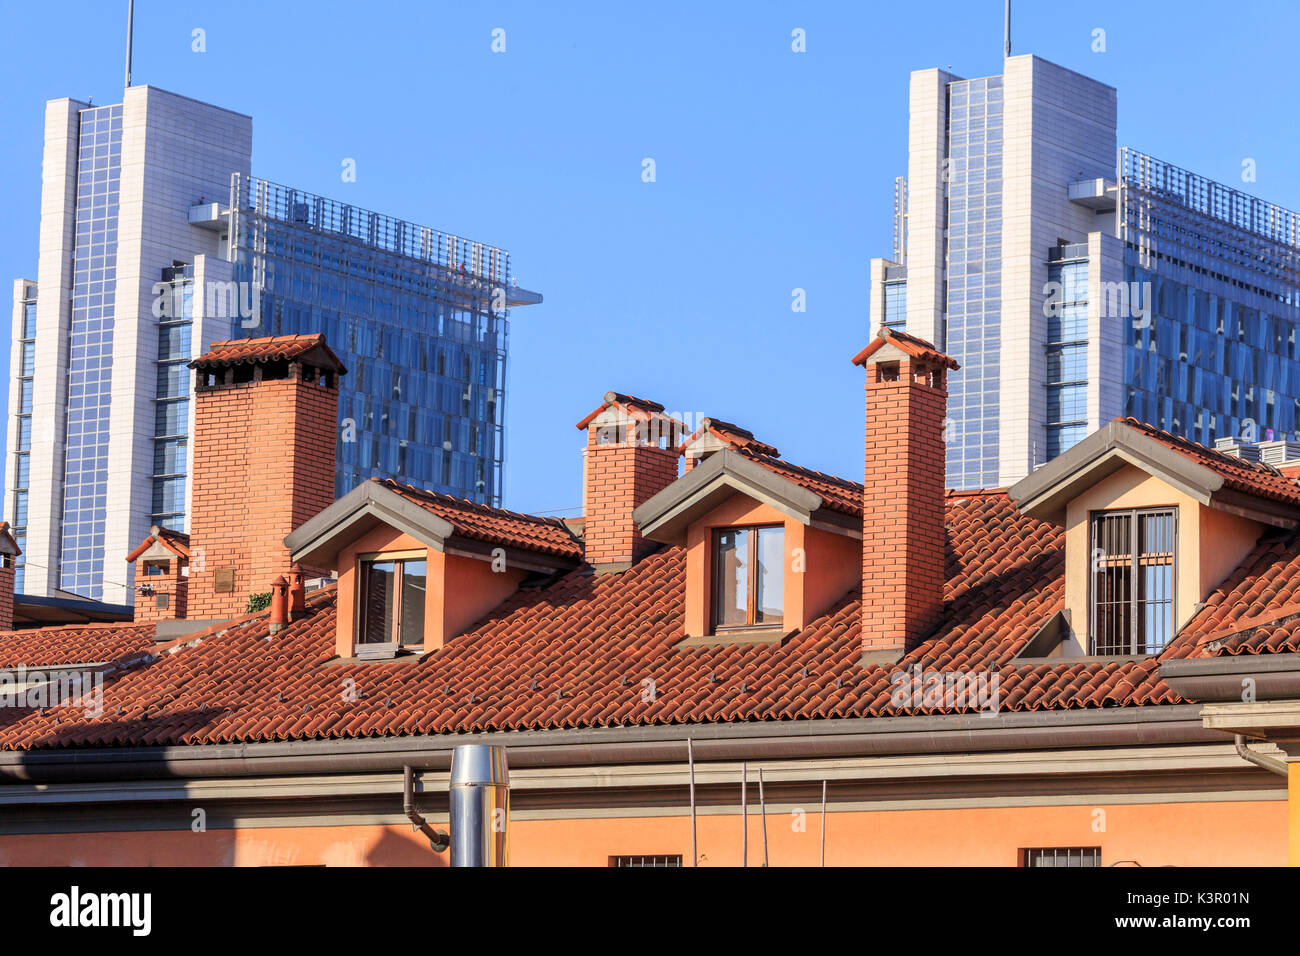 Le contraste entre les anciennes maisons typiques et de nouveaux bâtiments modernes et gratte-ciel Milan Lombardie Italie Europe Banque D'Images